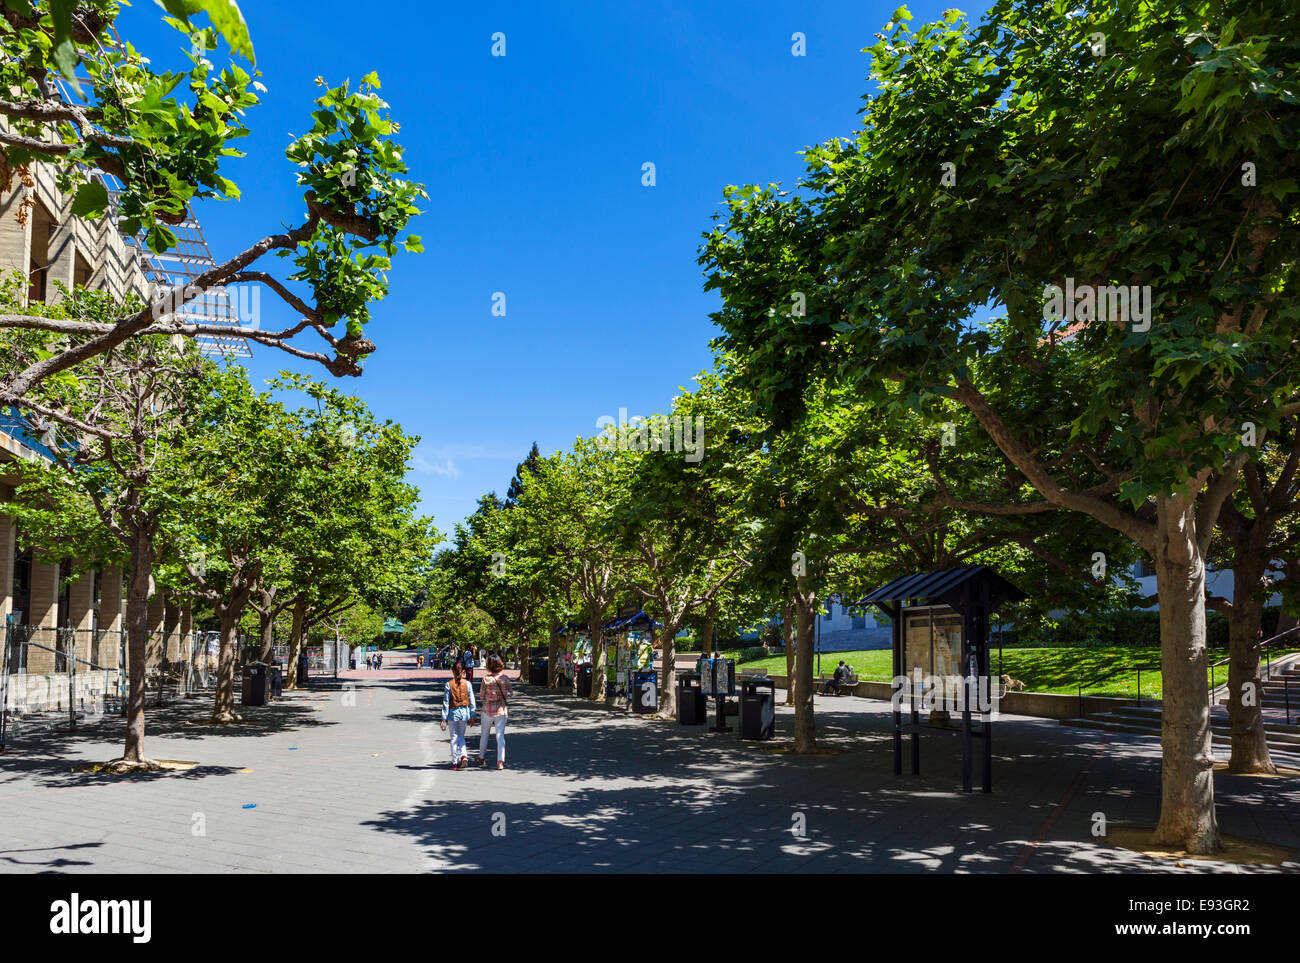 Sather la strada di ingresso alla University of California di Berkeley, Berkeley, California, Stati Uniti d'America Foto Stock